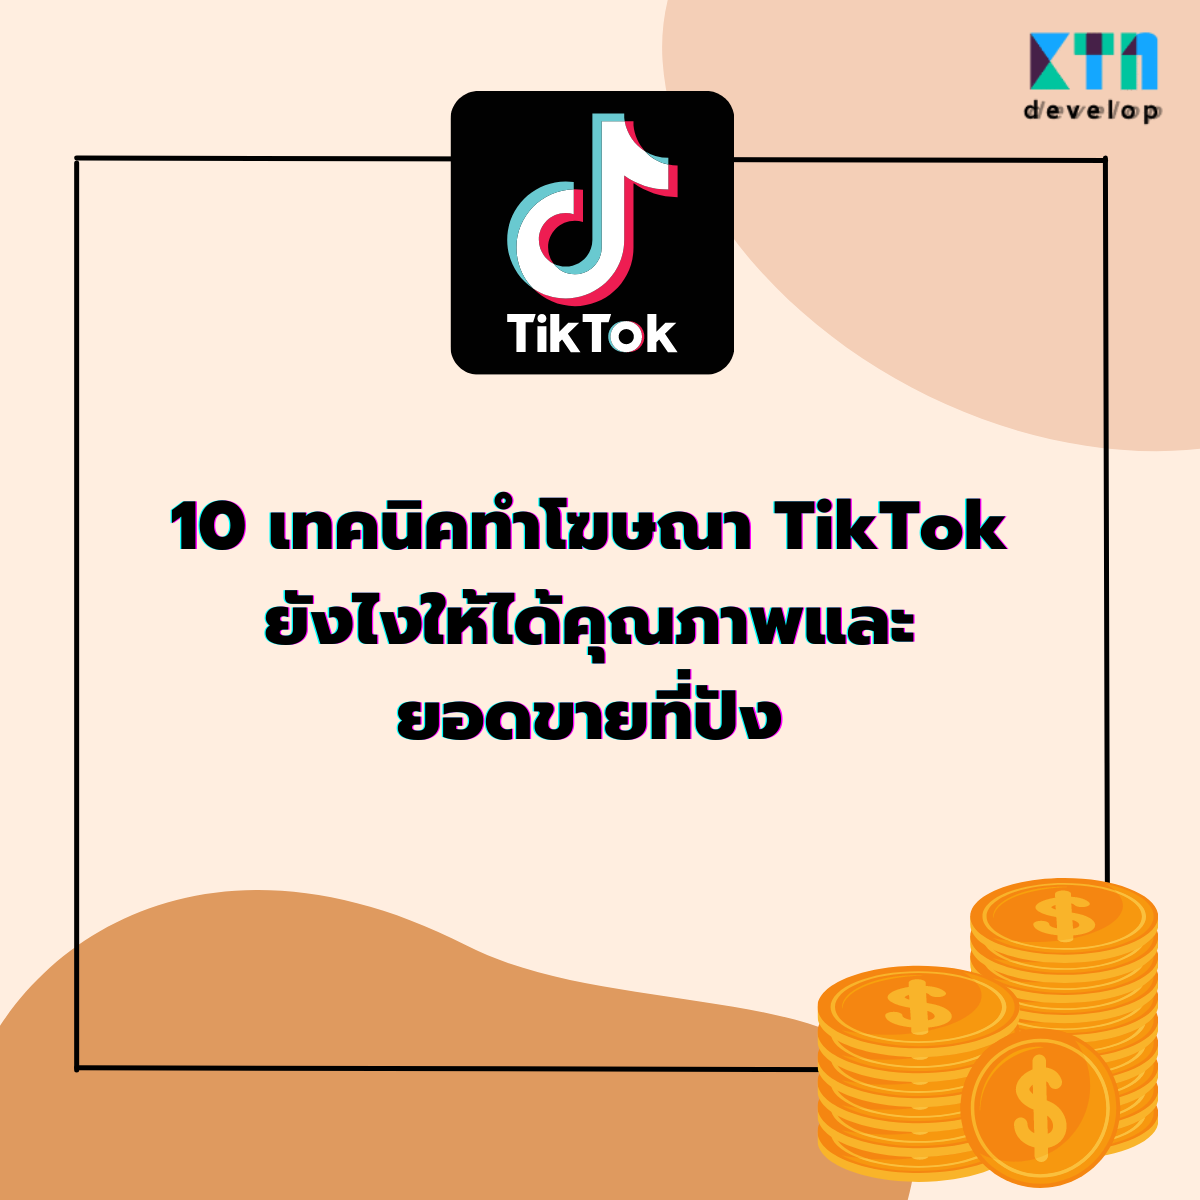 10 เทคนิคทำโฆษณา TikTok ยังไงให้ได้คุณภาพและยอดขายที่ปัง